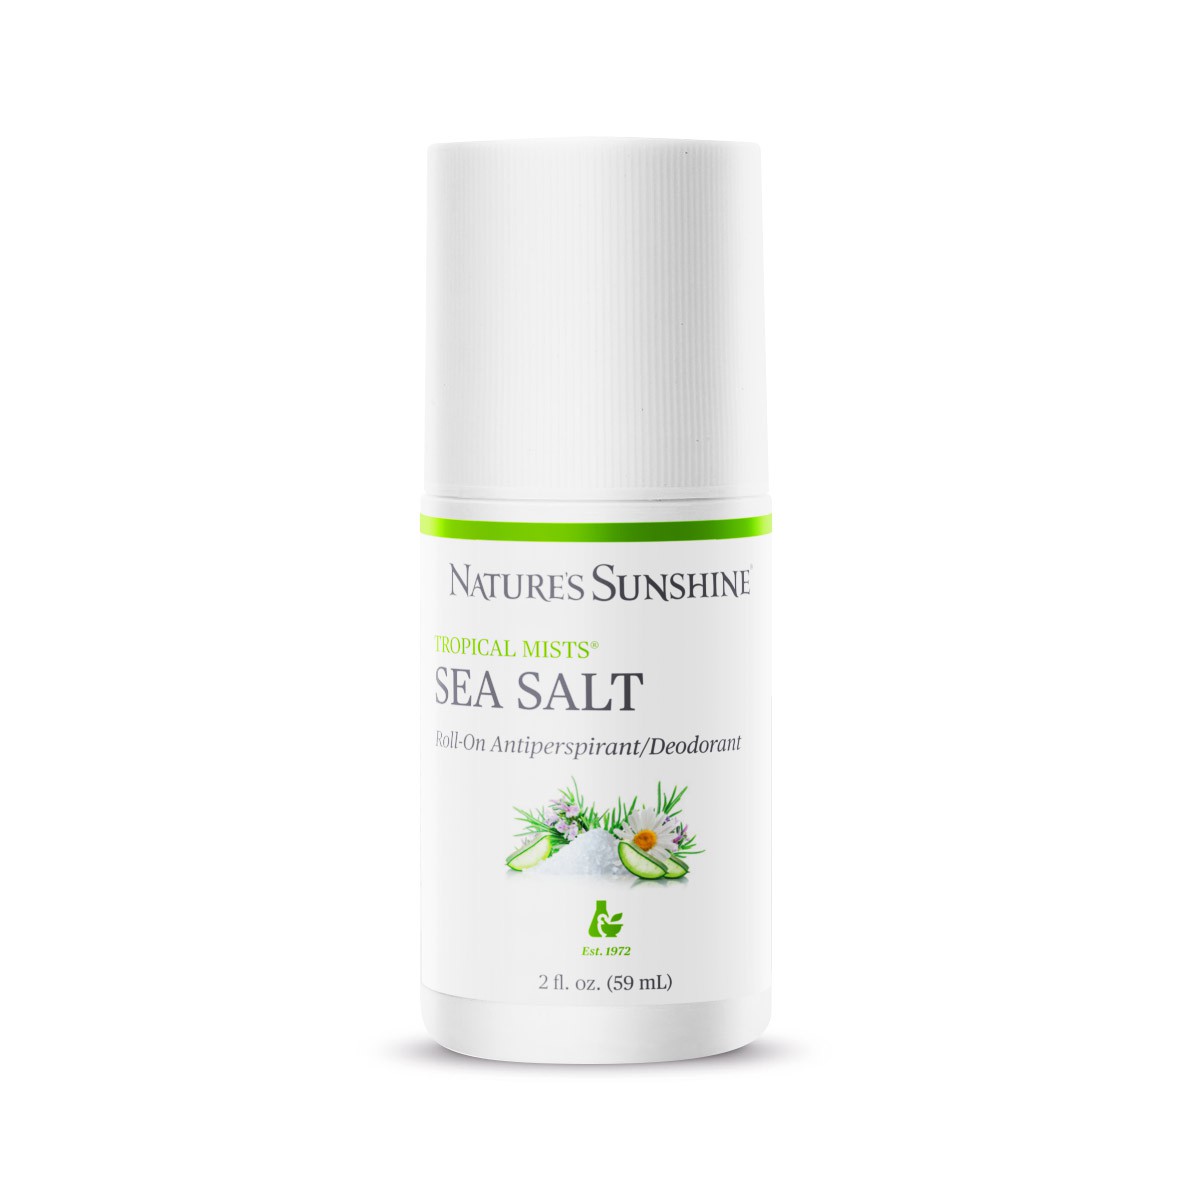 Sea Salt Roll-On Antiperspirant/Deodorant 